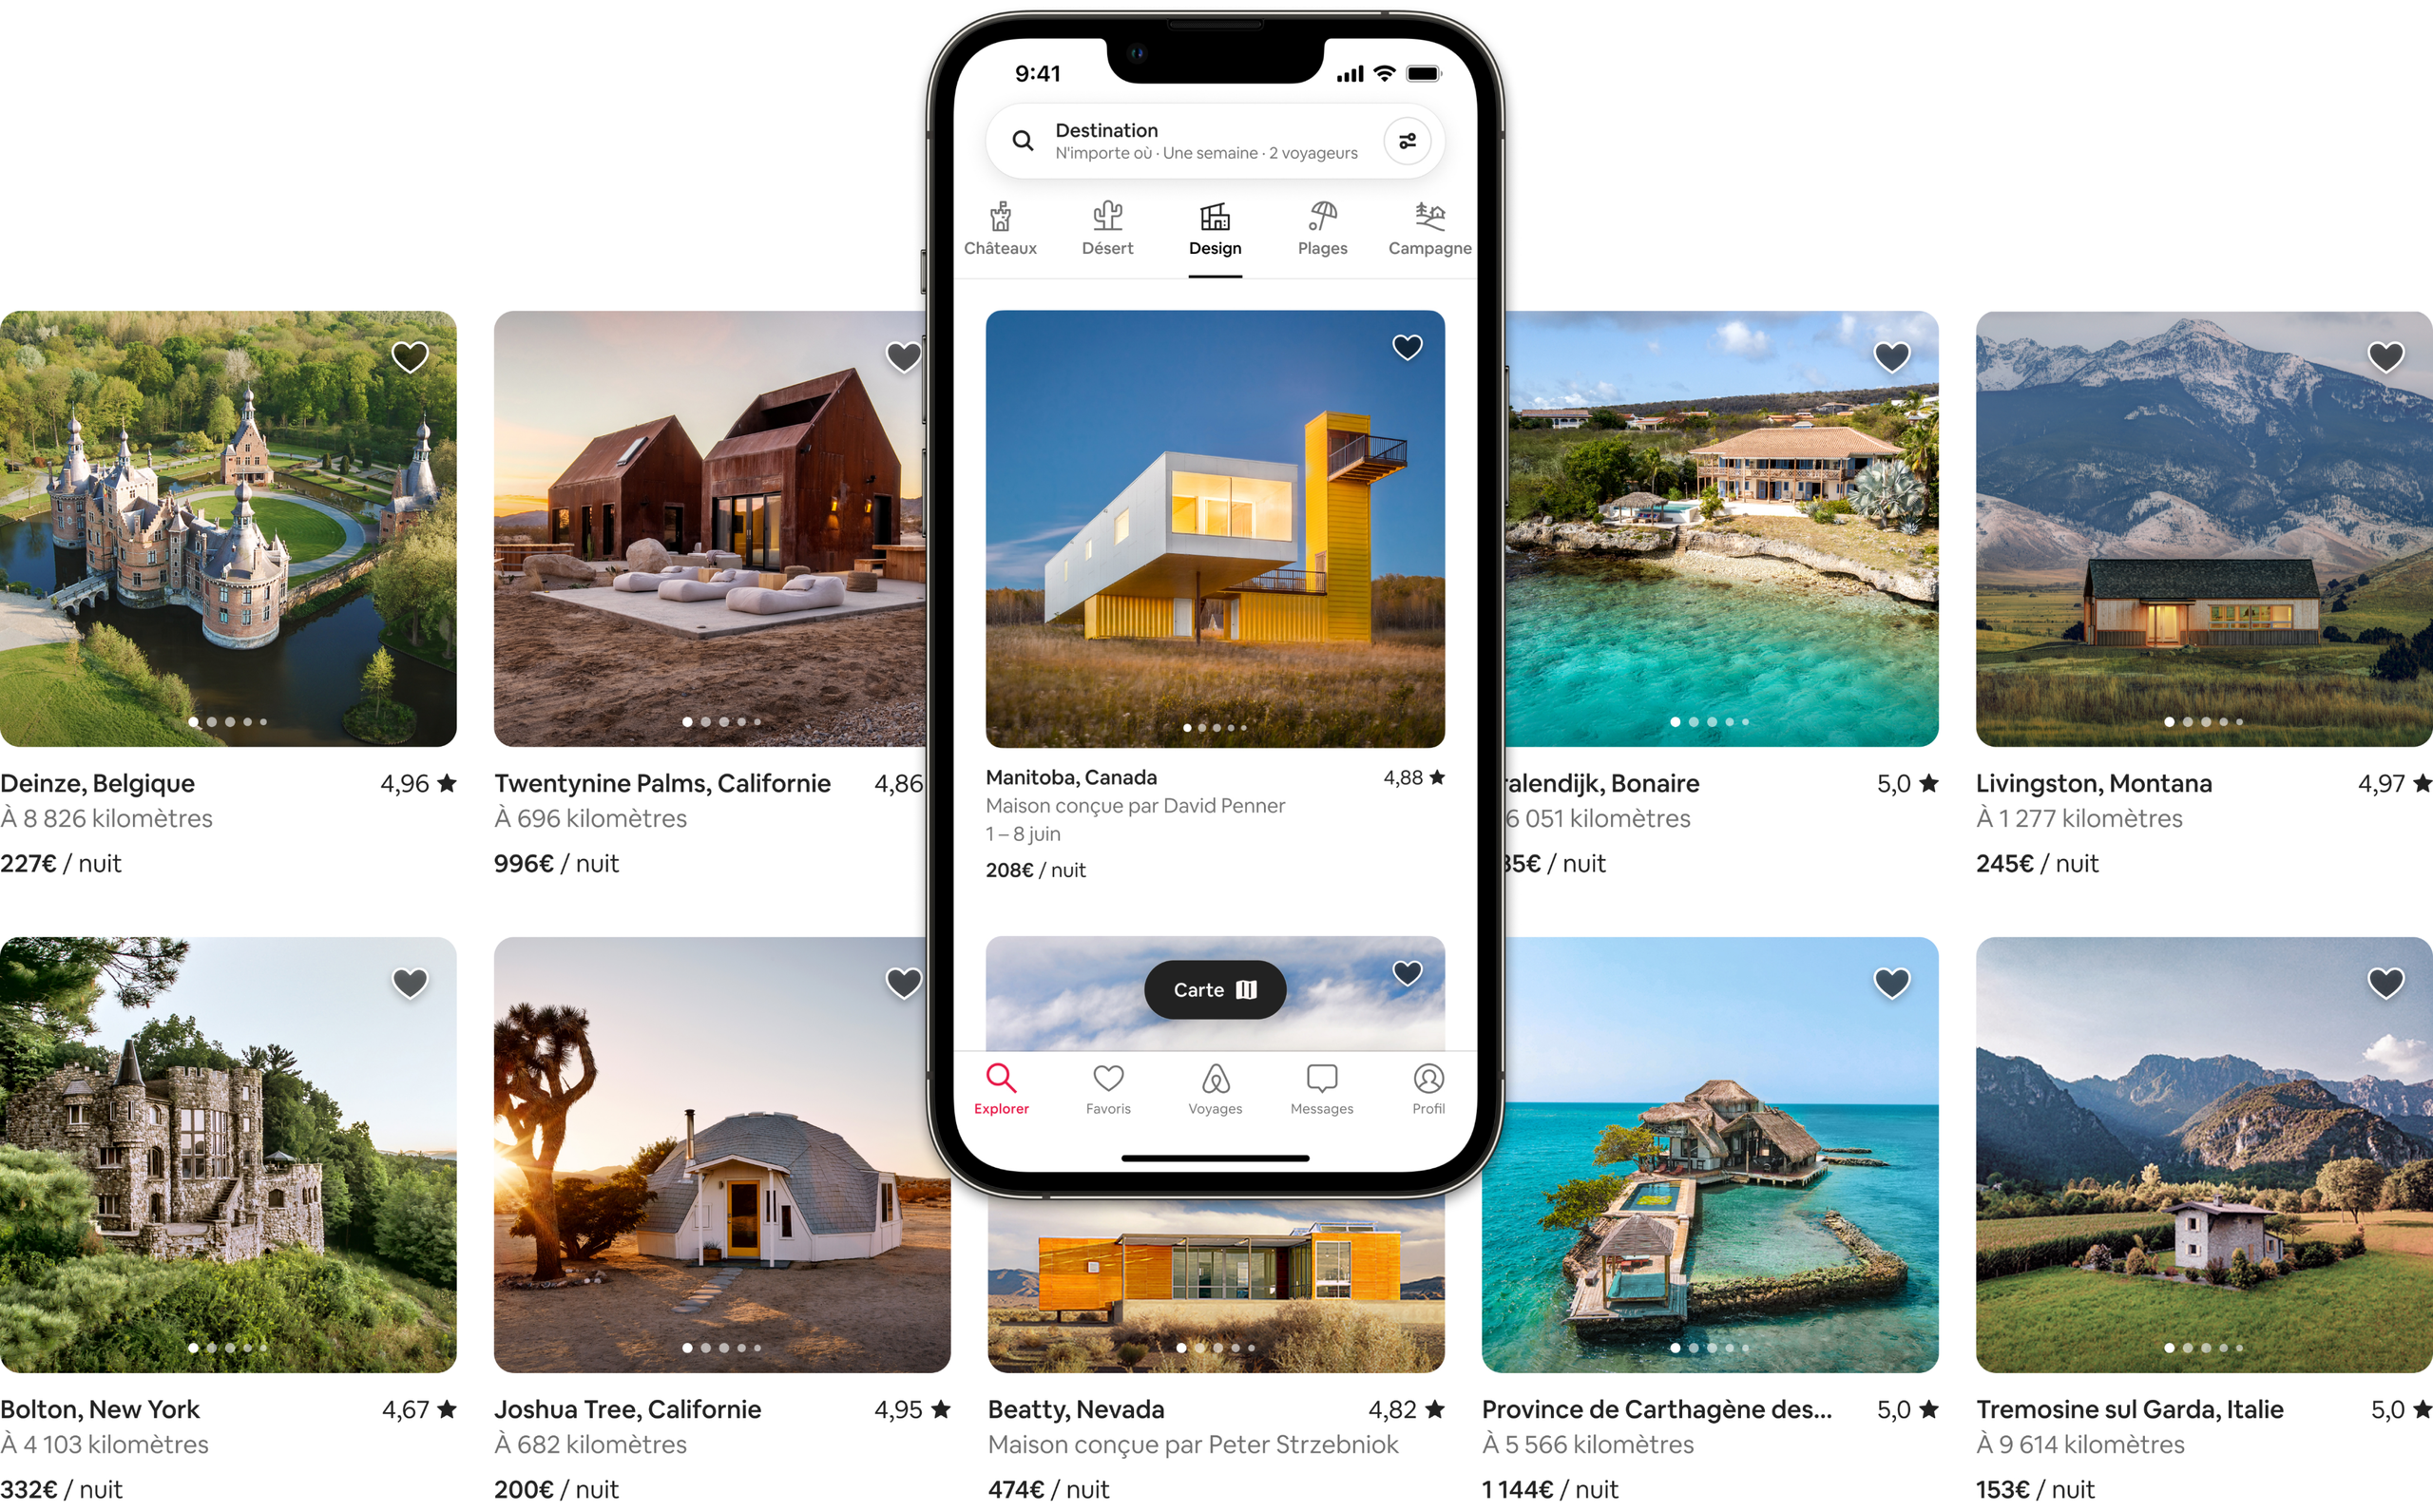 Deux rangées de photos illustrent de magnifiques logements dans les catégories Château, Désert, Design, Plage et Campagne sur Airbnb. L'une des annonces apparaît sur l'écran d'un cellulaire, illustrant comment les annonces apparaissent dans l'appli Airbnb.